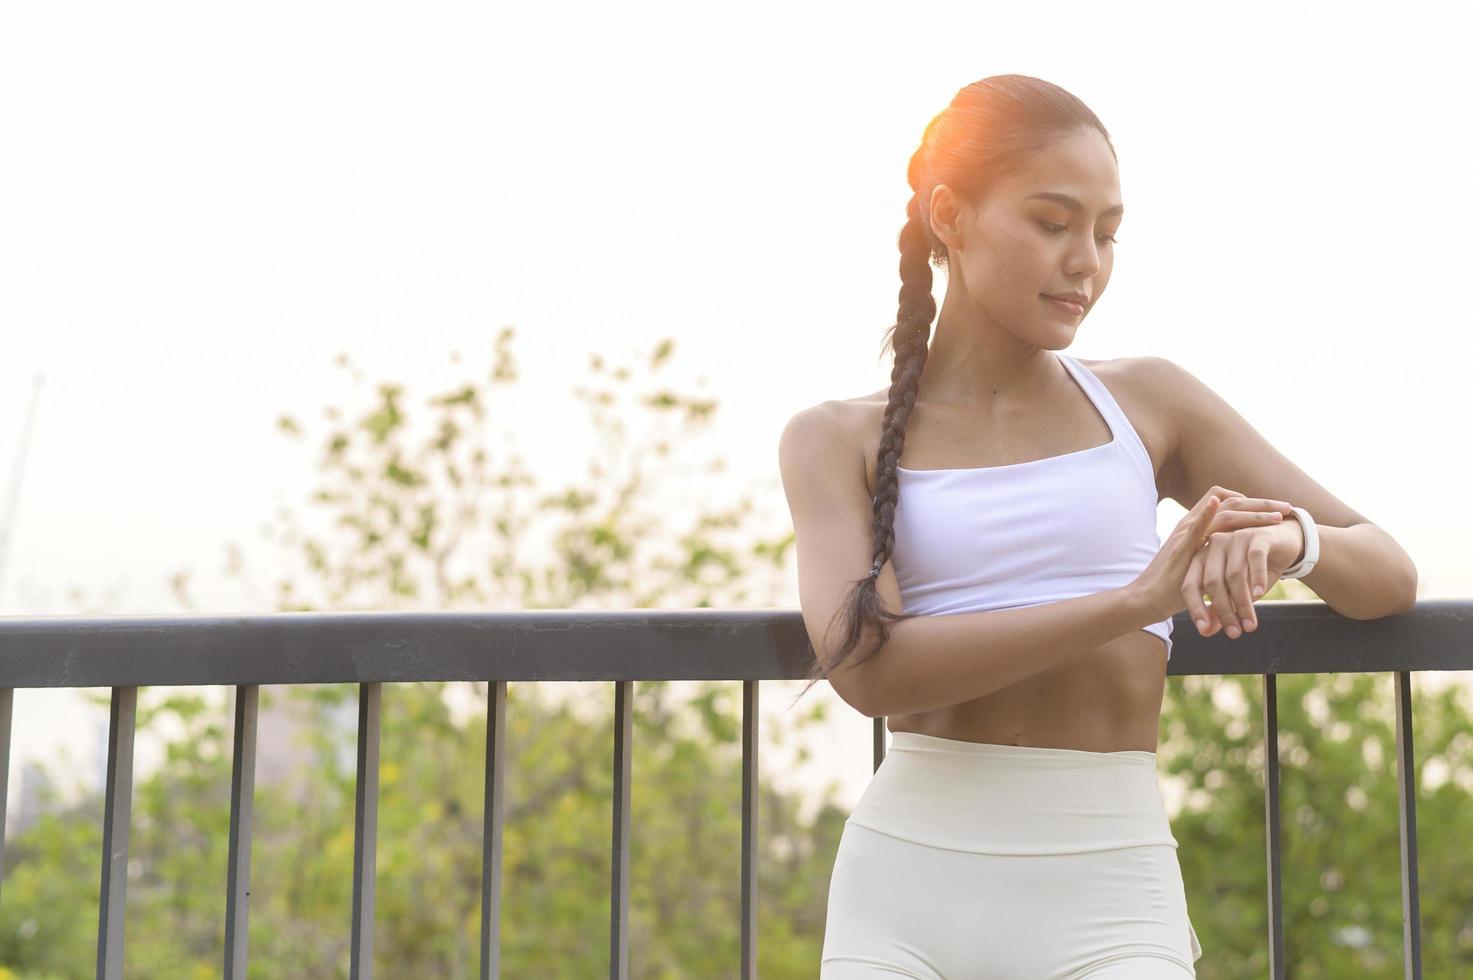 uma jovem fitness em roupas esportivas usando relógio inteligente enquanto se exercita no parque da cidade, saudável e estilos de vida. foto